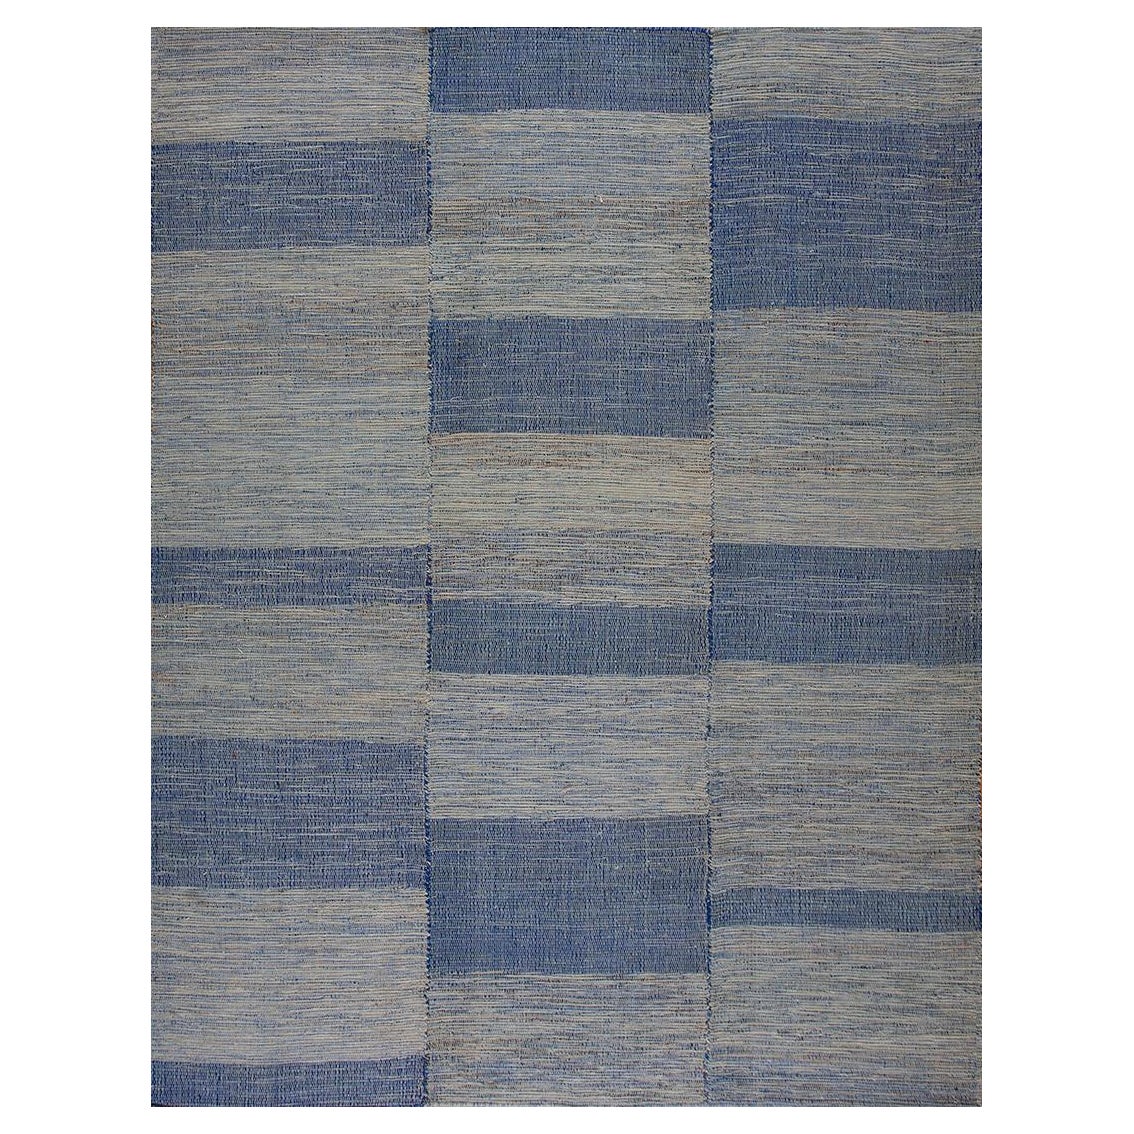 Zeitgenössischer Shaker-Teppich ( 9' x 12' - 274 x 365 )